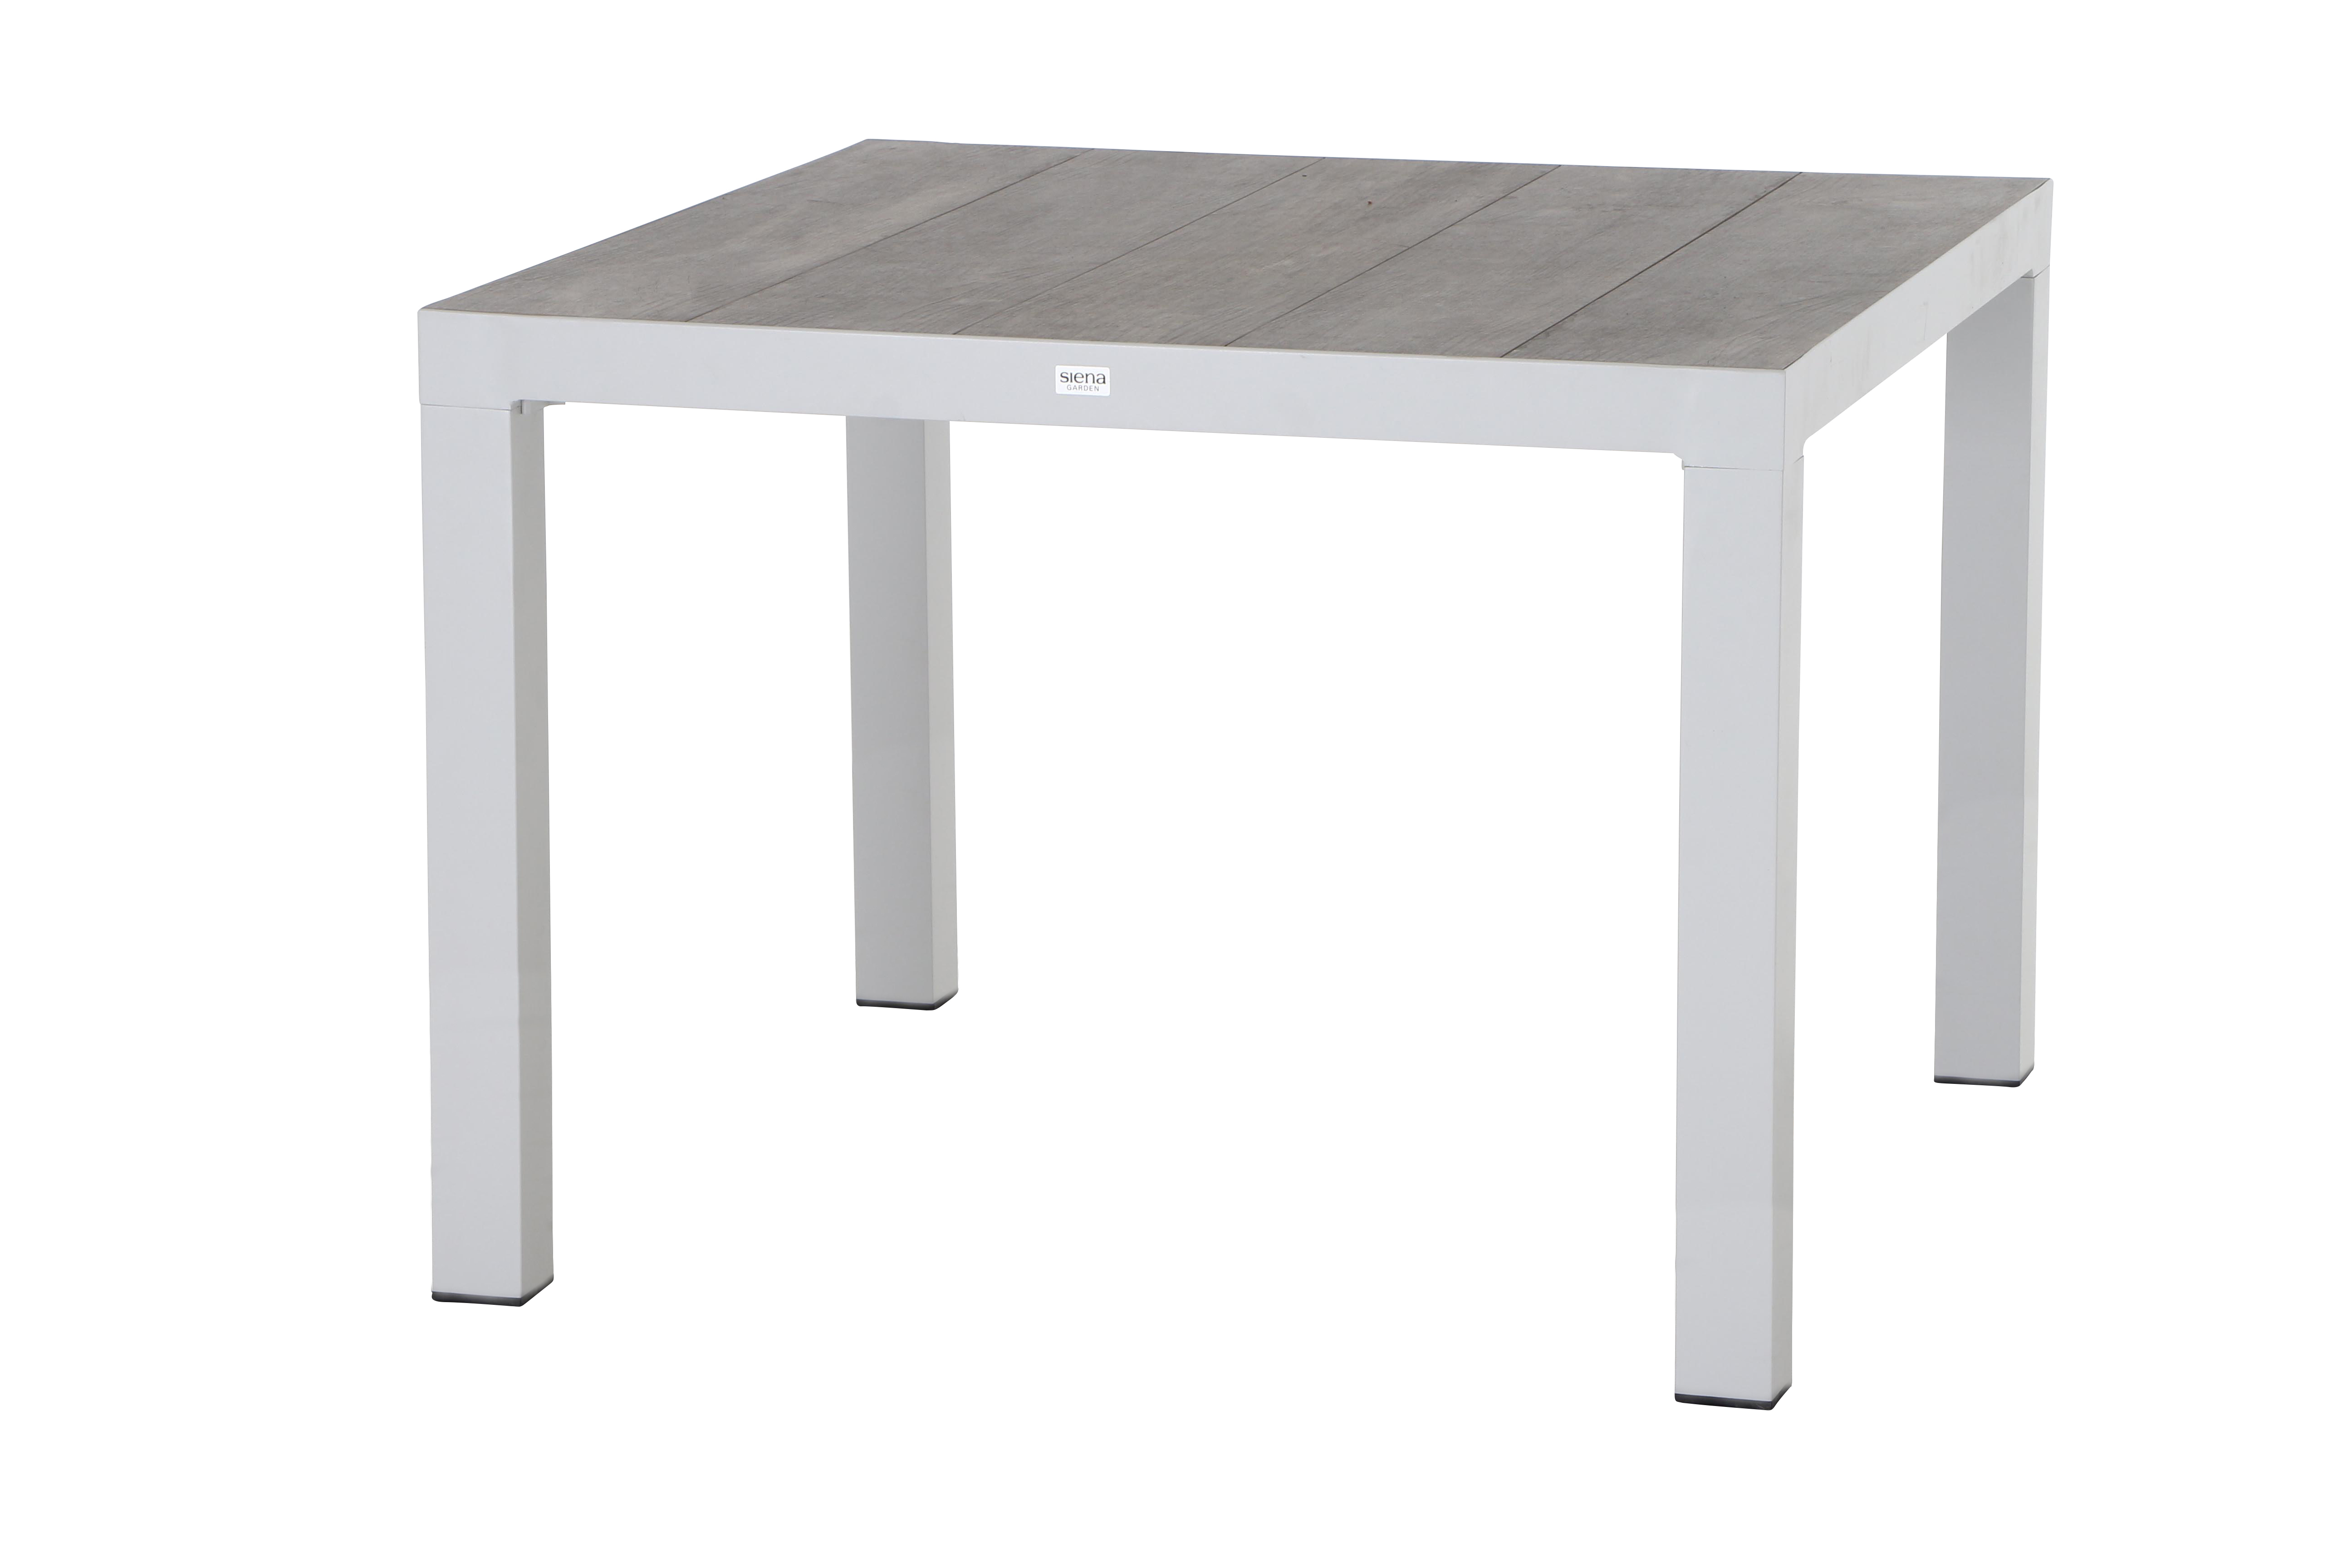 Siena Garden Dining Tisch Silva 100x100 cm, Weiß/Grau